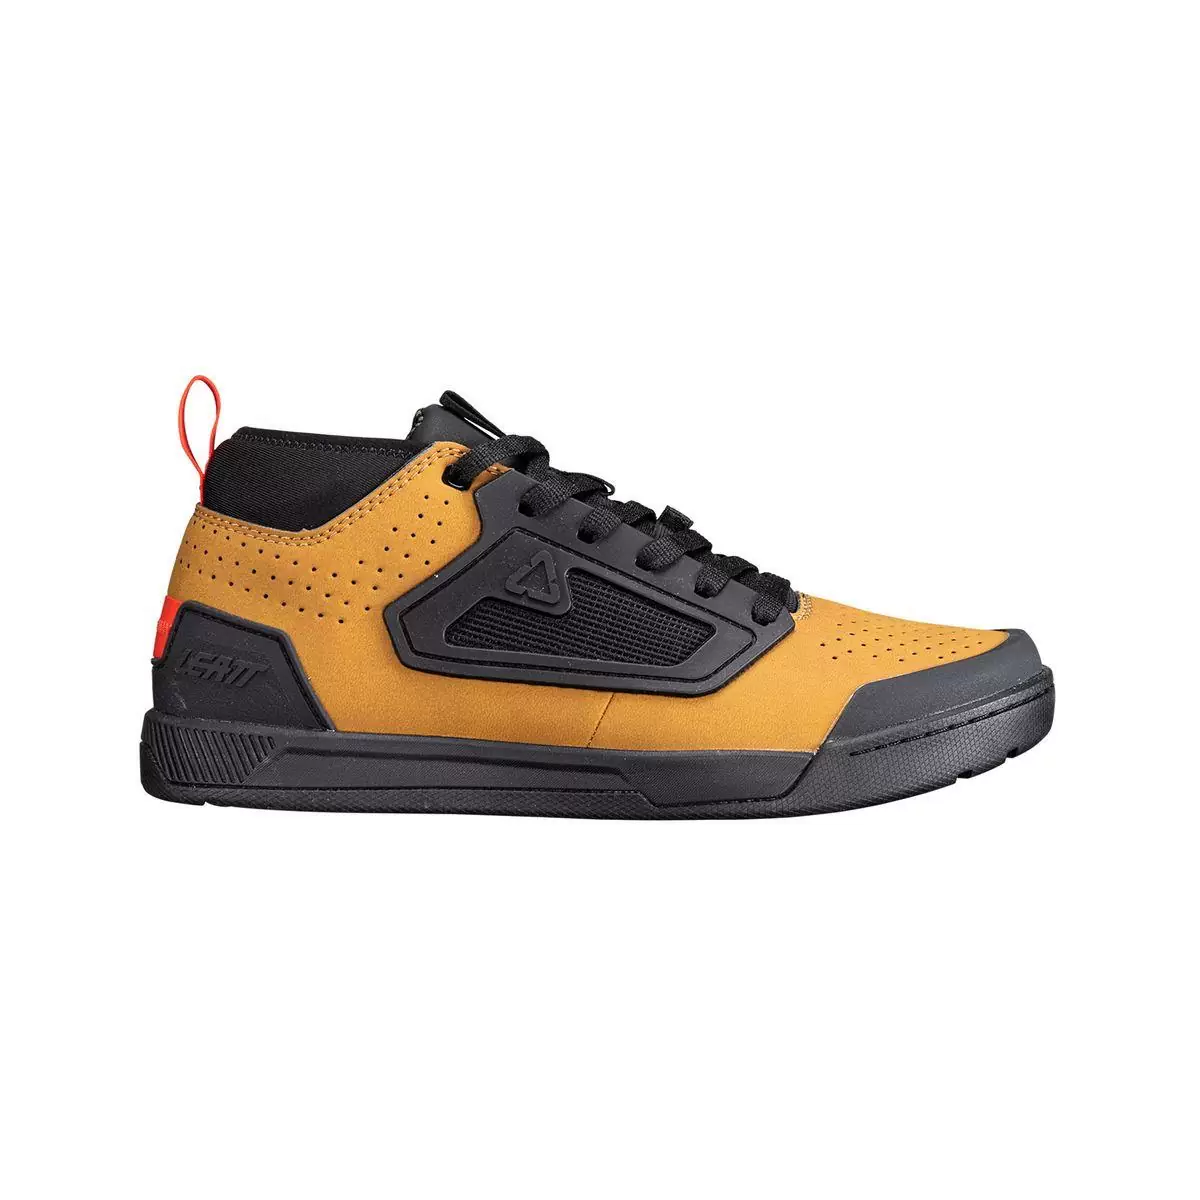 Chaussures VTT Flat 3.0 marron/noir taille 44 #1